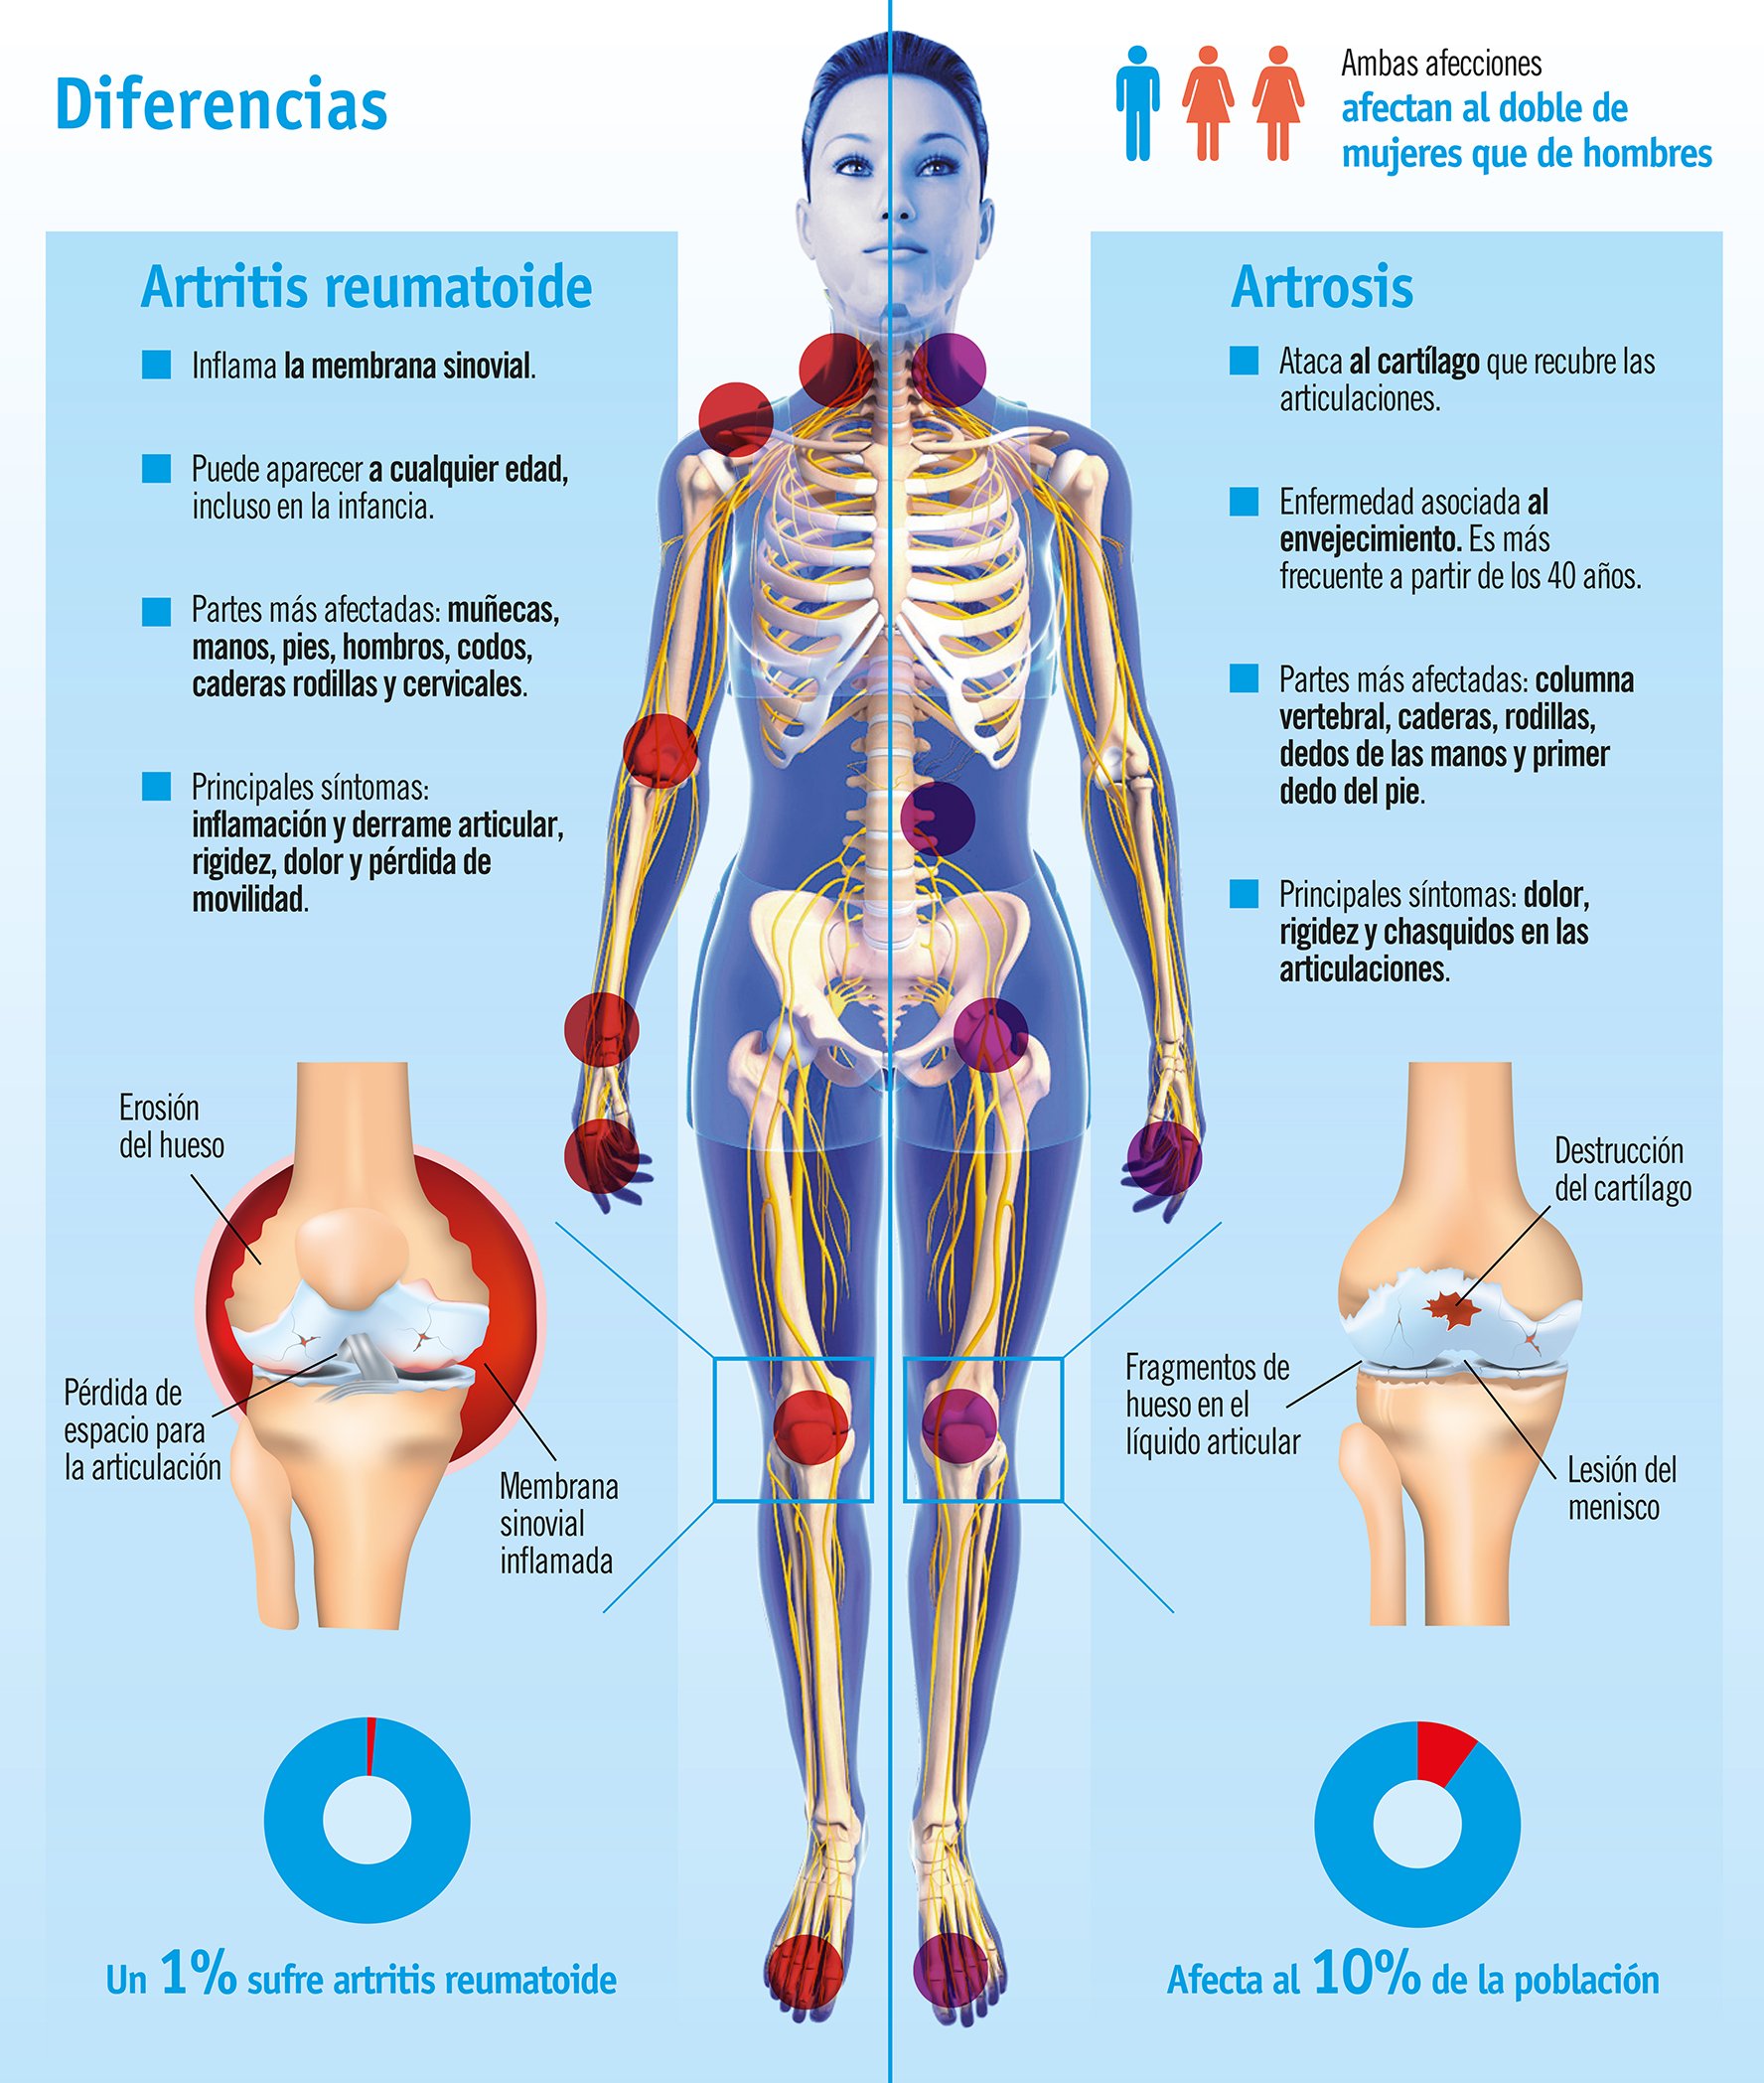 Adelaida esculpir Alentar Cuál es la diferencia entre Artritis y Artrosis? Causas y síntomas